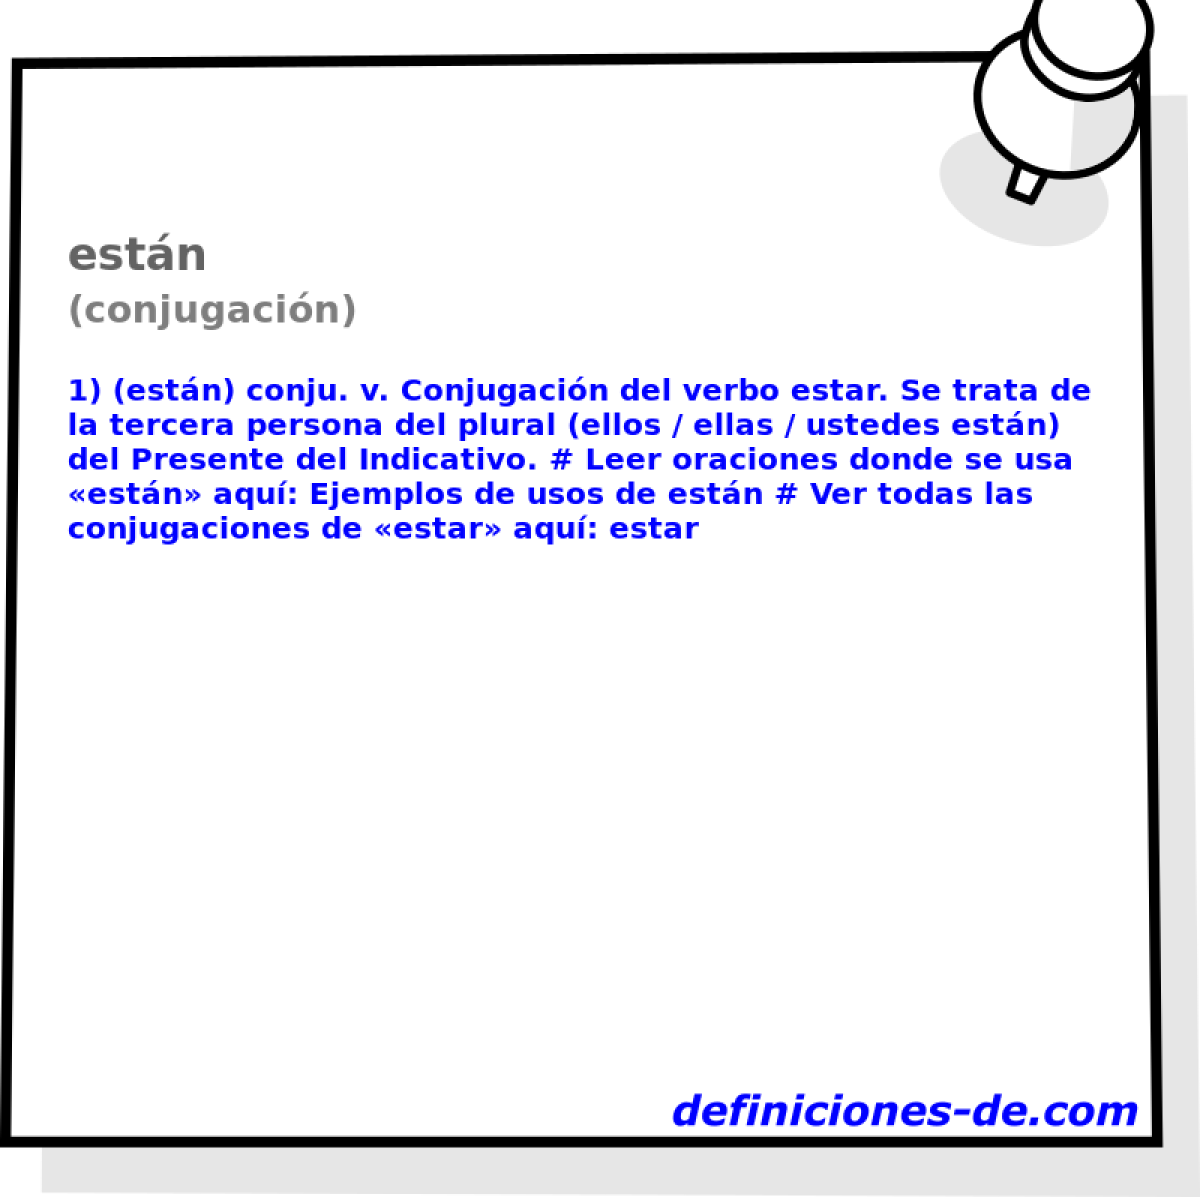 estn (conjugacin)